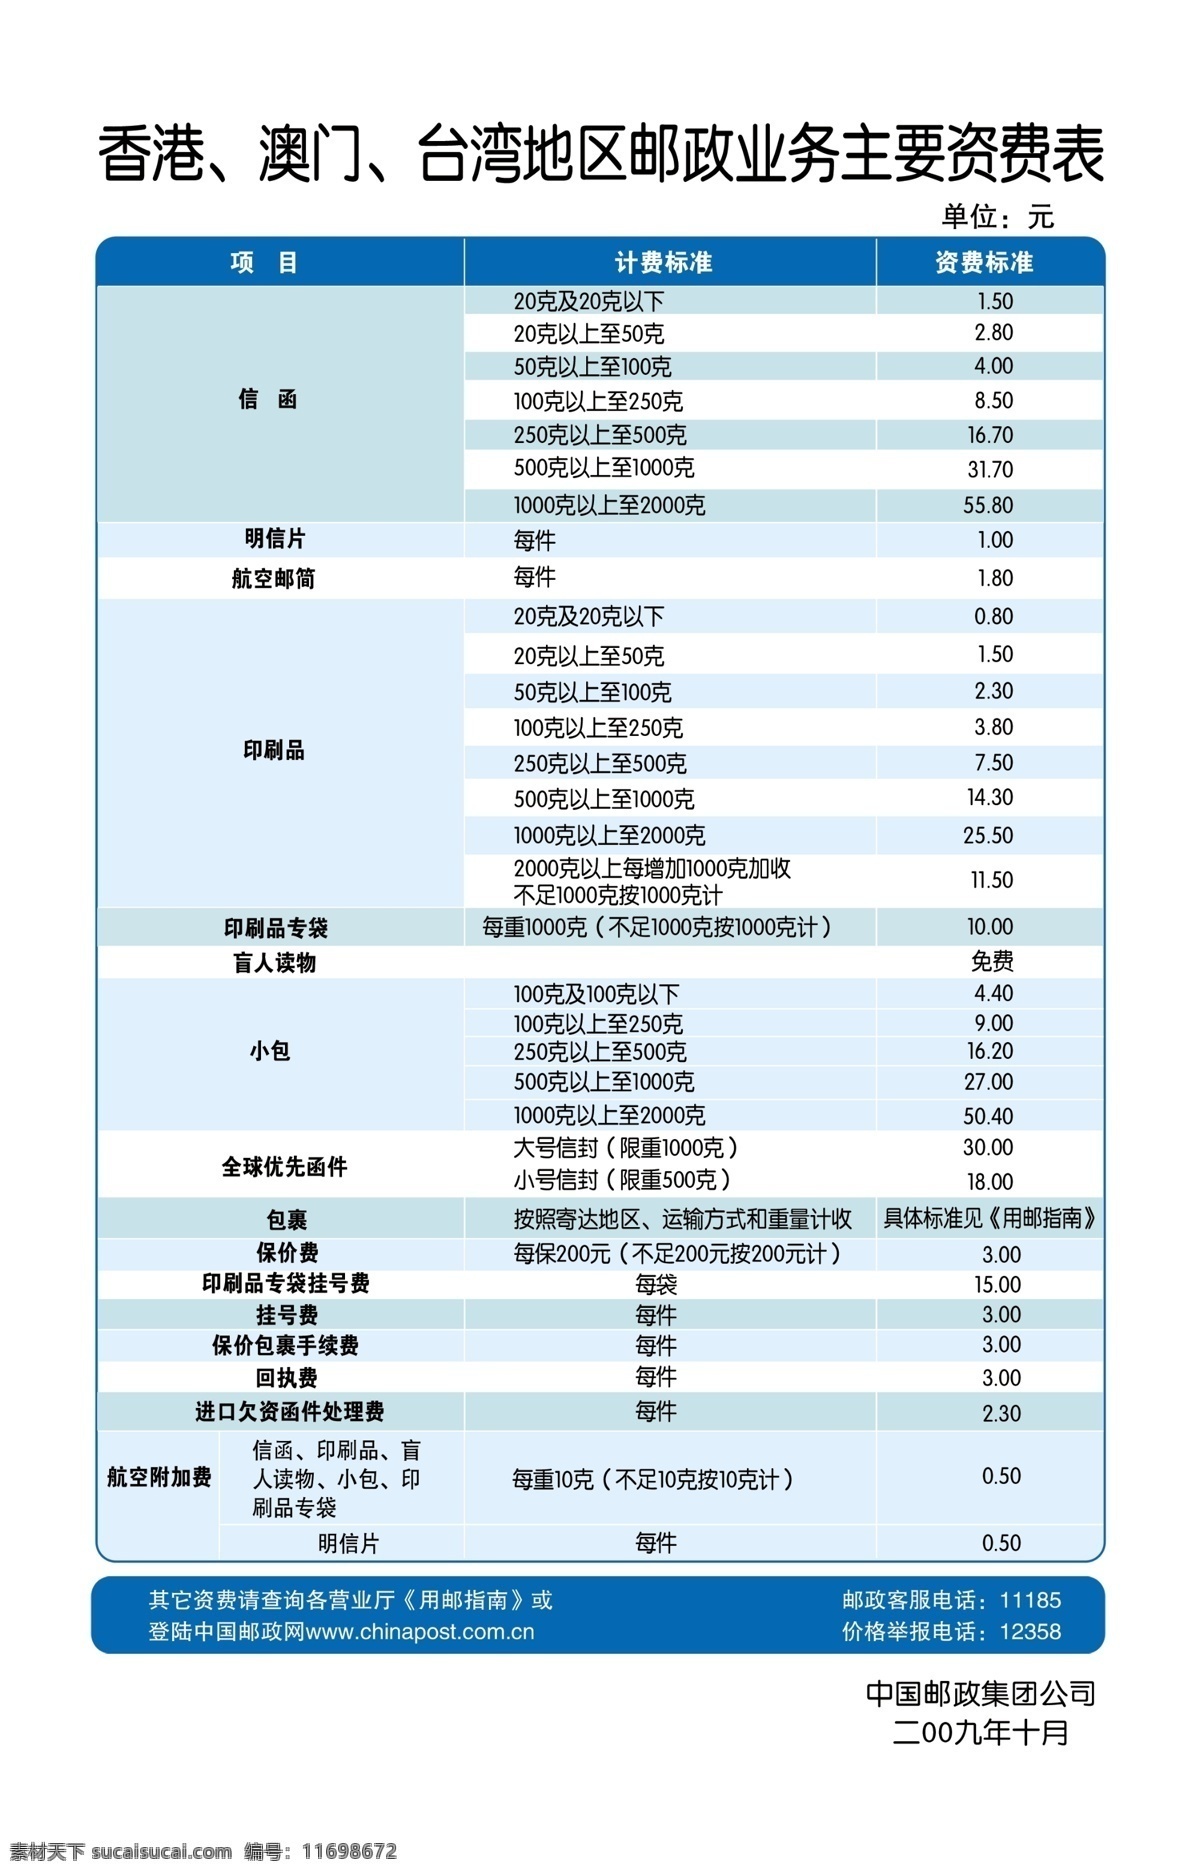 香港 澳门 台湾地区 邮政业务 主要 资费 表 中国邮政 河南邮政 资费表 展板模板 广告设计模板 源文件